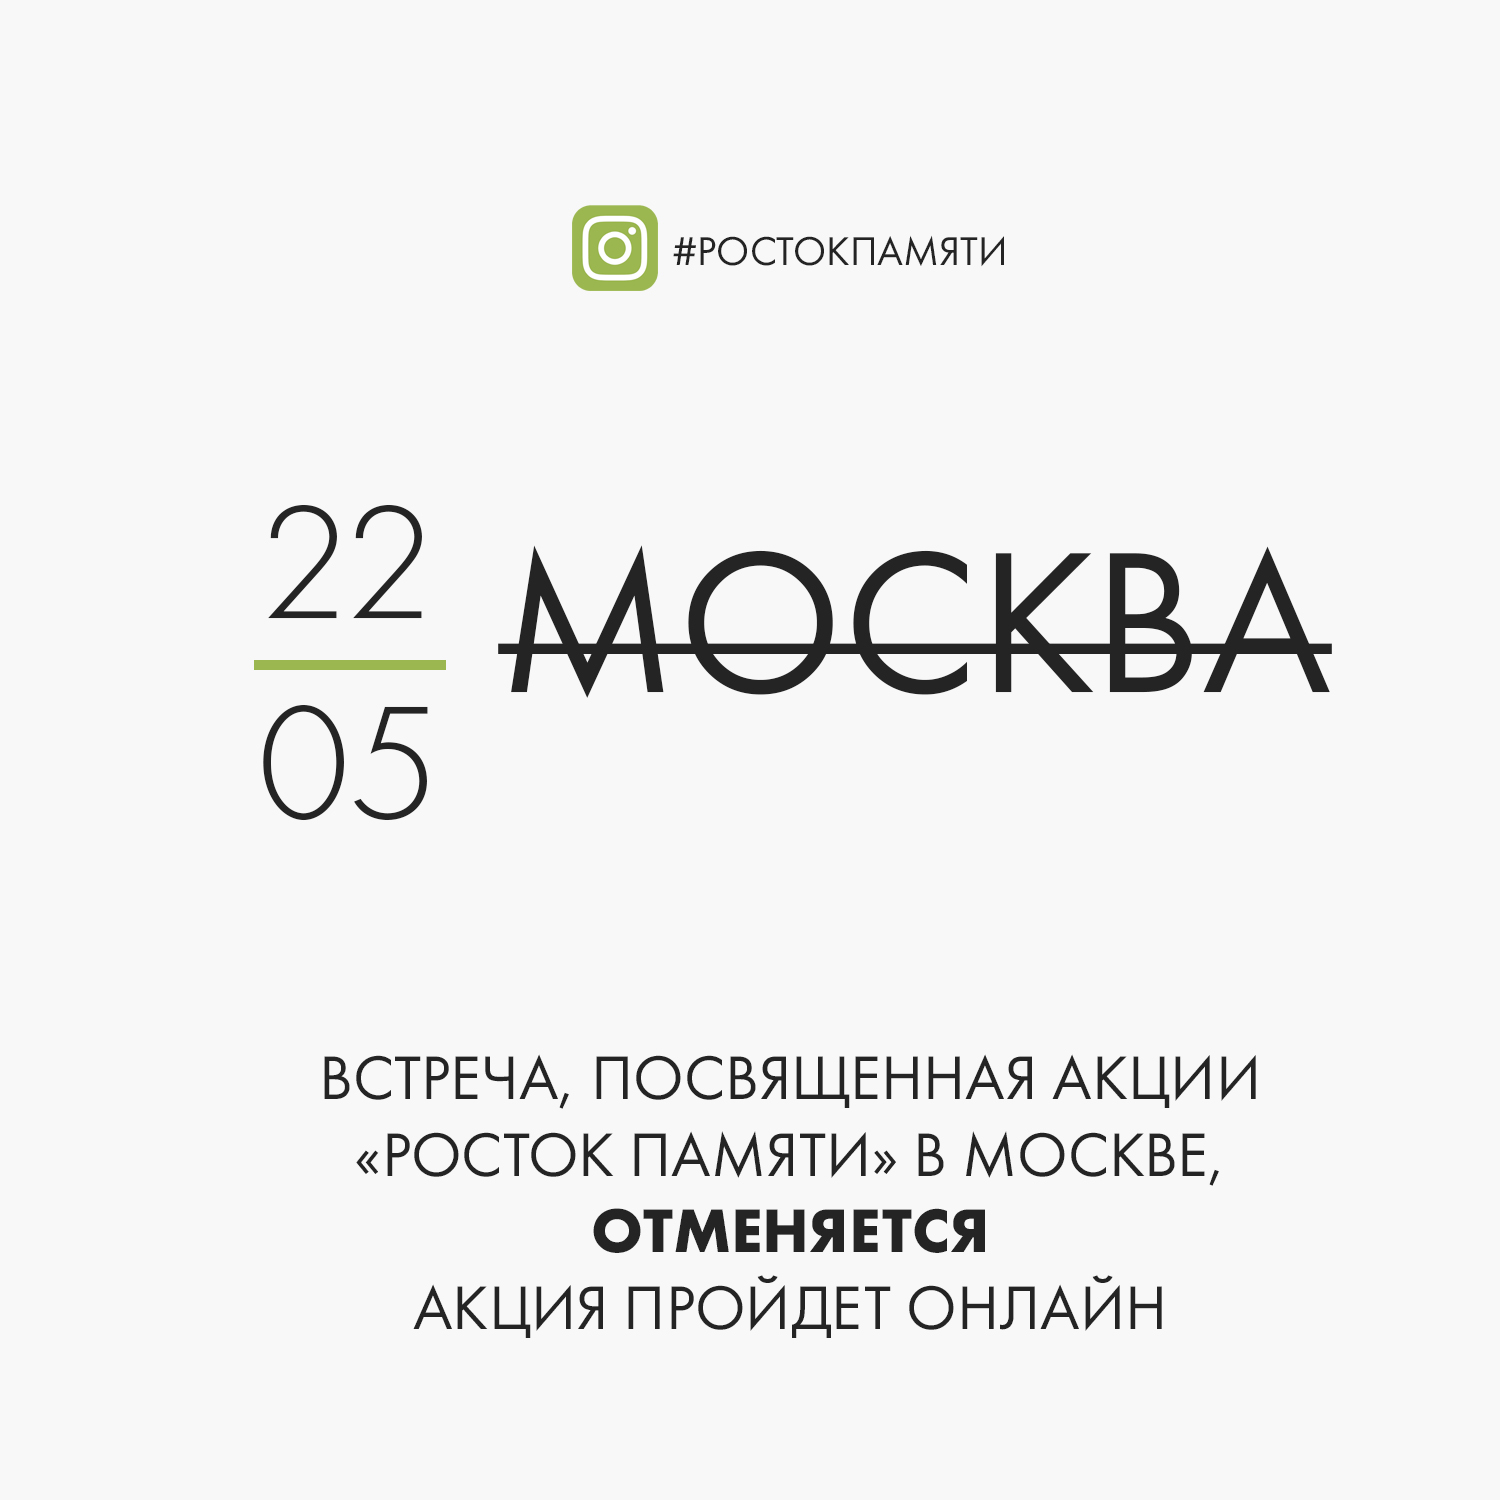 Встреча, посвященная акции «Росток памяти» в Москве, ОТМЕНЯЕТСЯ